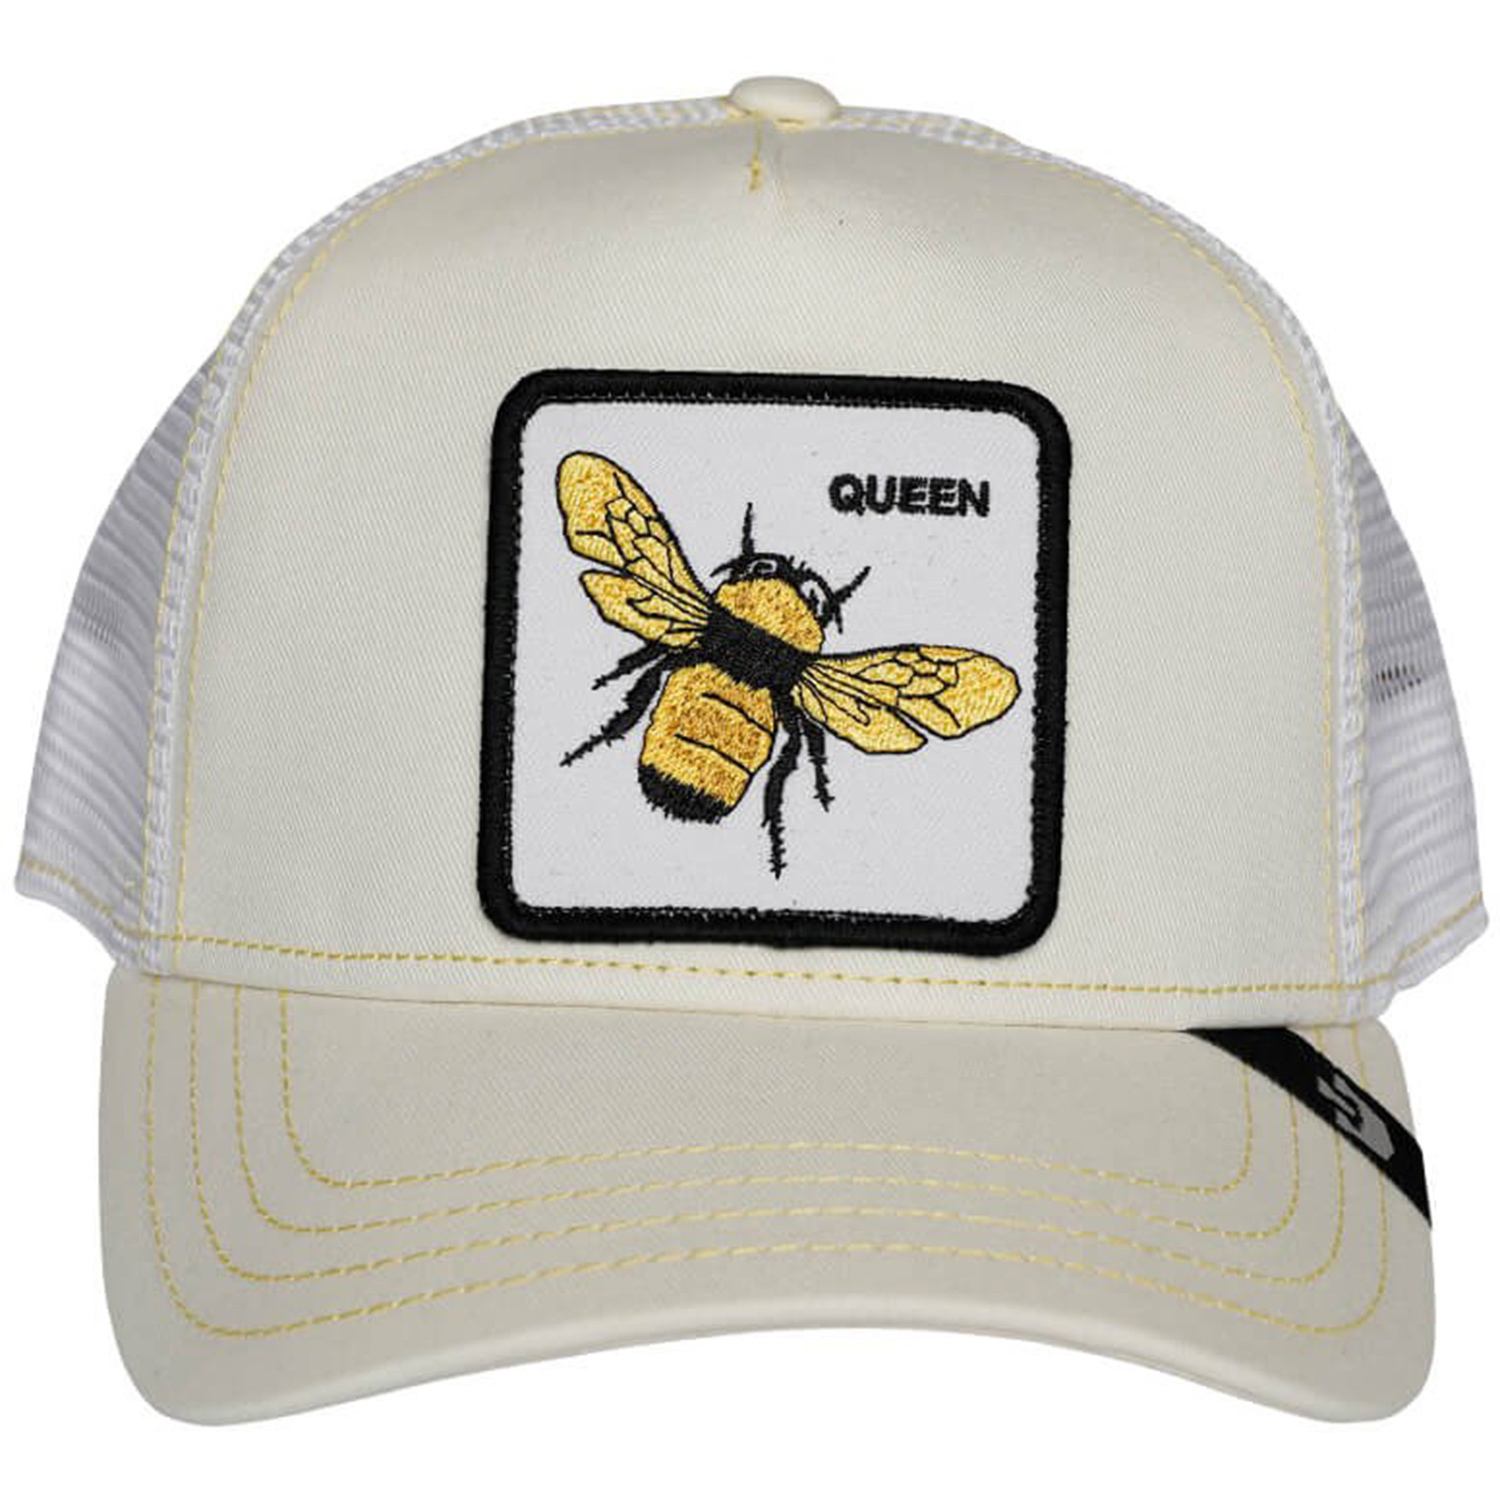 Goorin Bros Queen Bee Beyaz Şapka (101-0245-WHI)